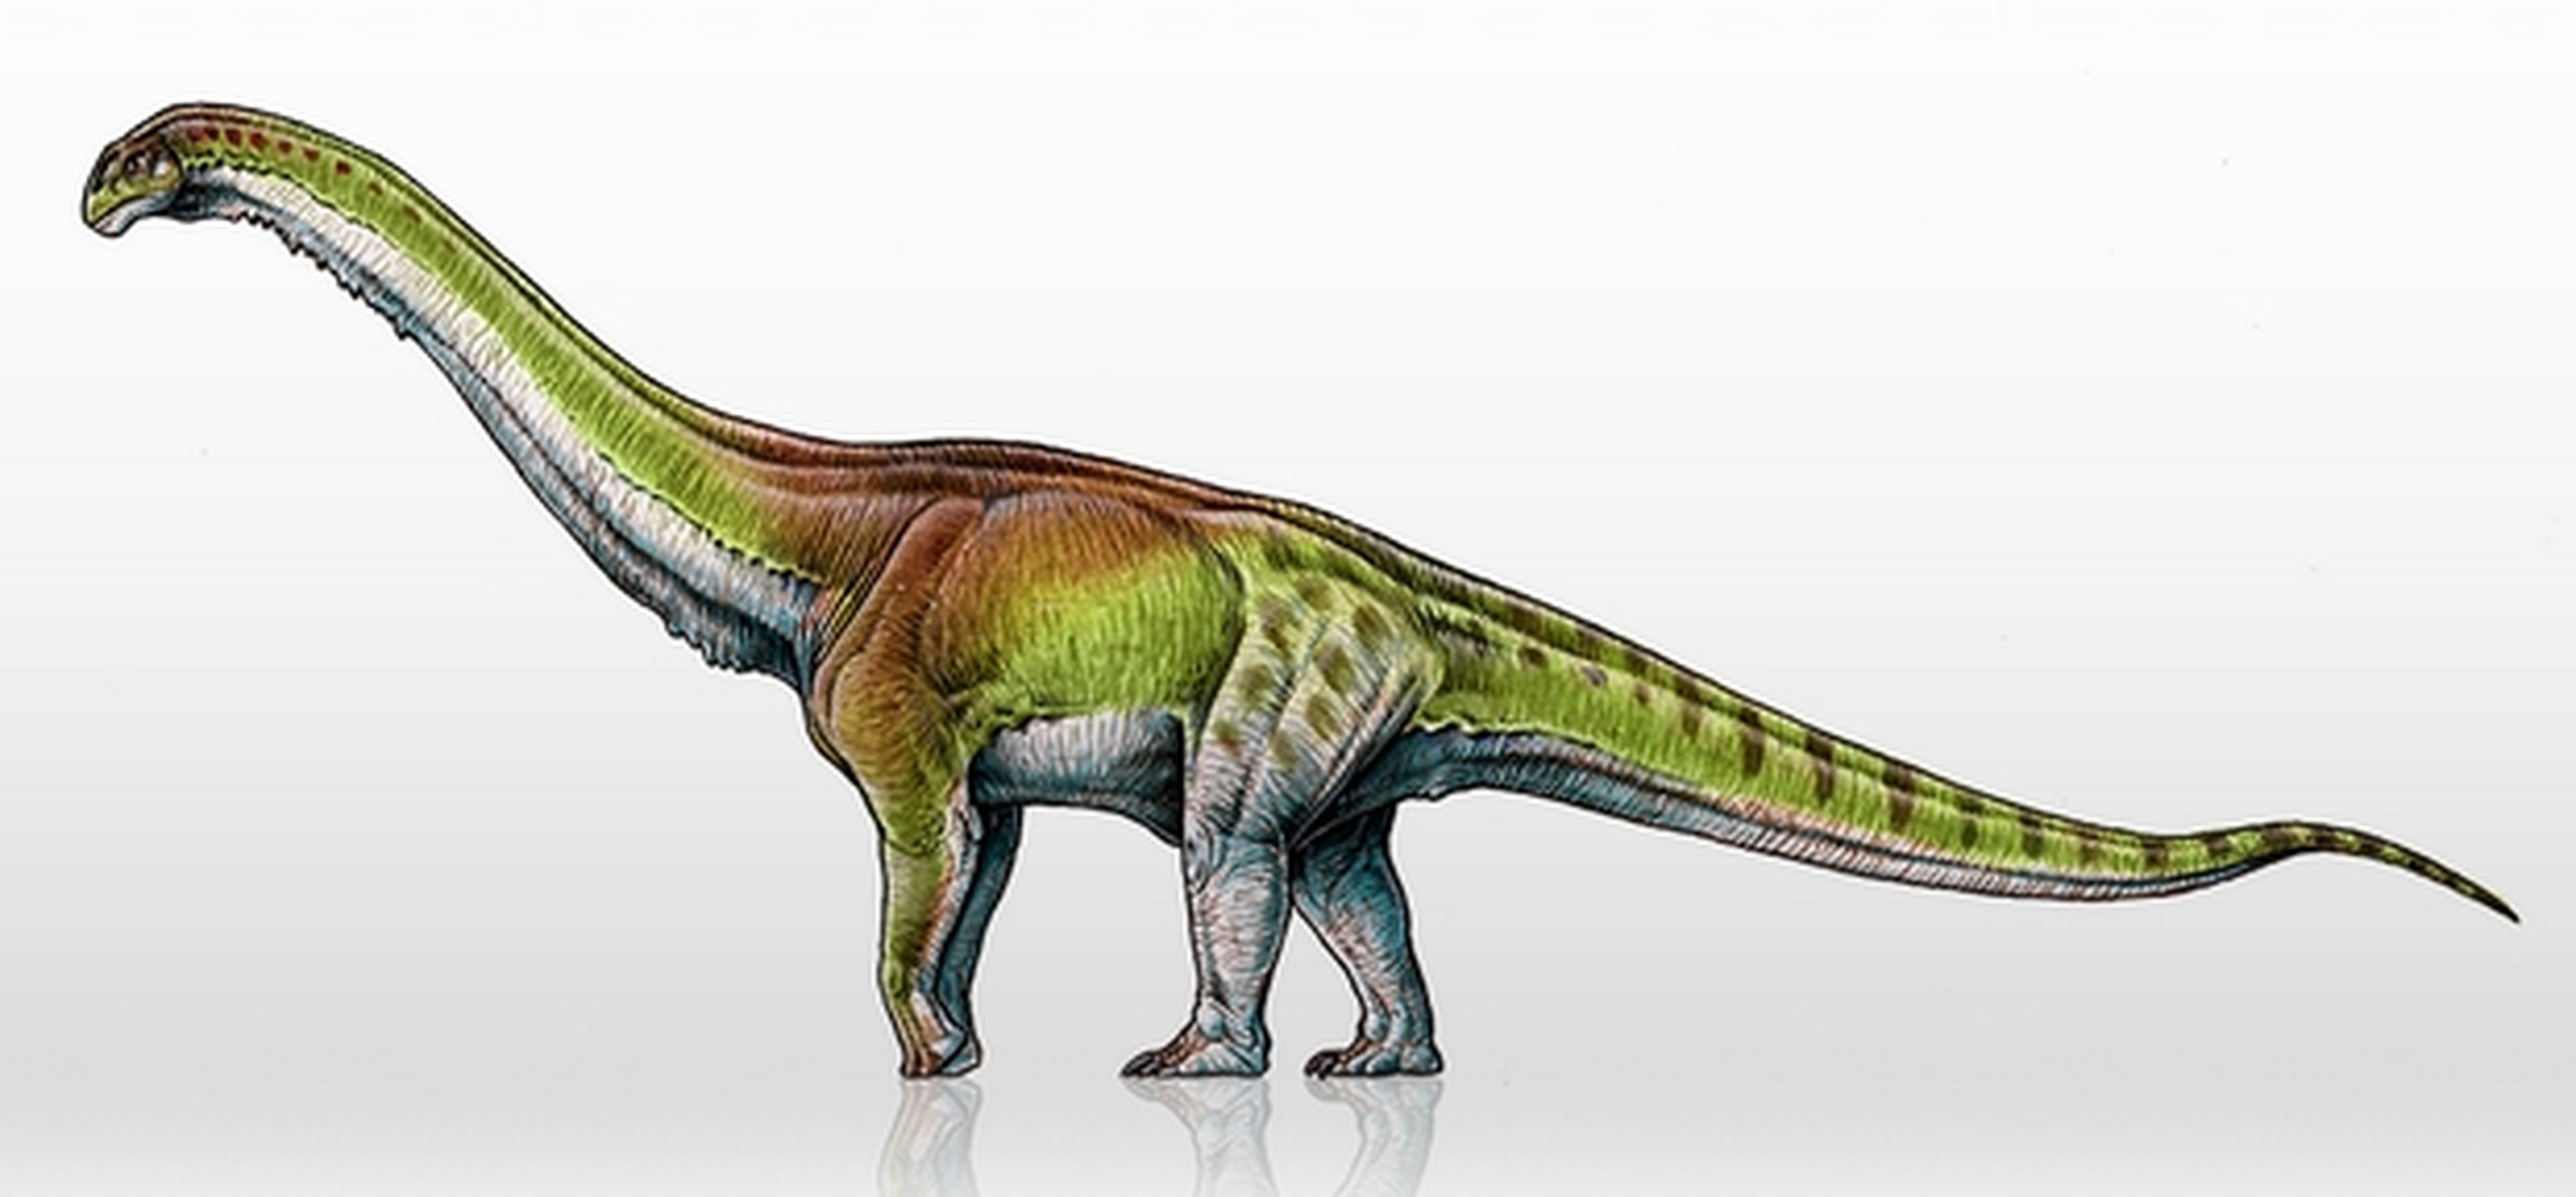 Patagotitan Mayorum, así es el dinosaurio más grande del mundo